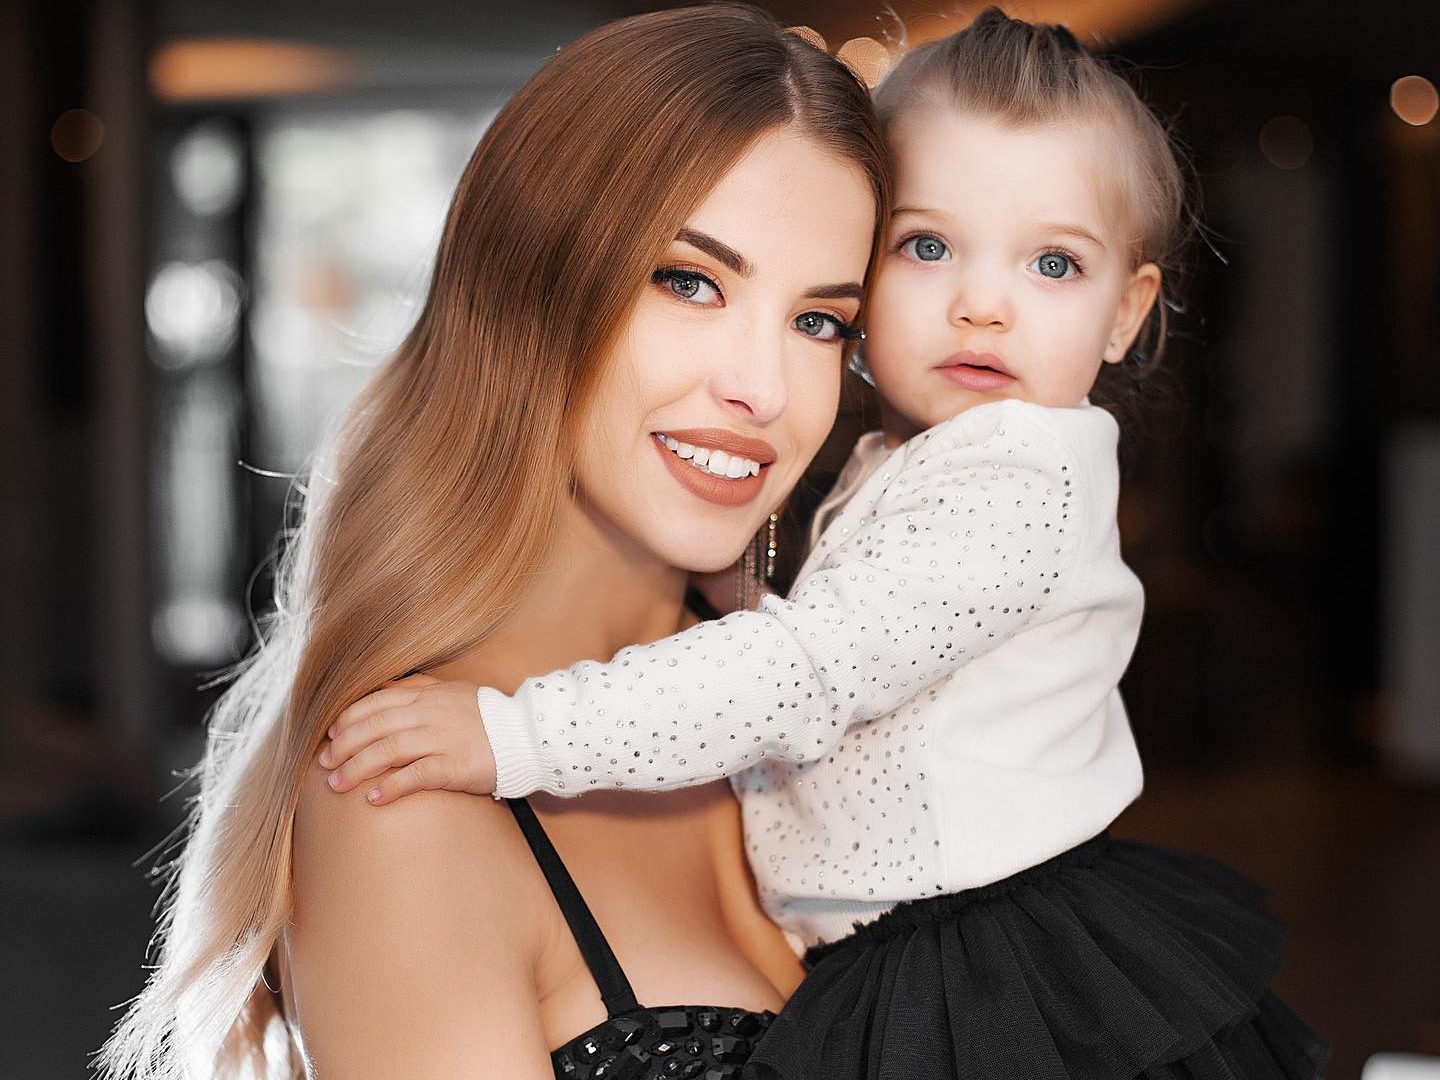 Raquel with her daughter. (Credit: Instagram)